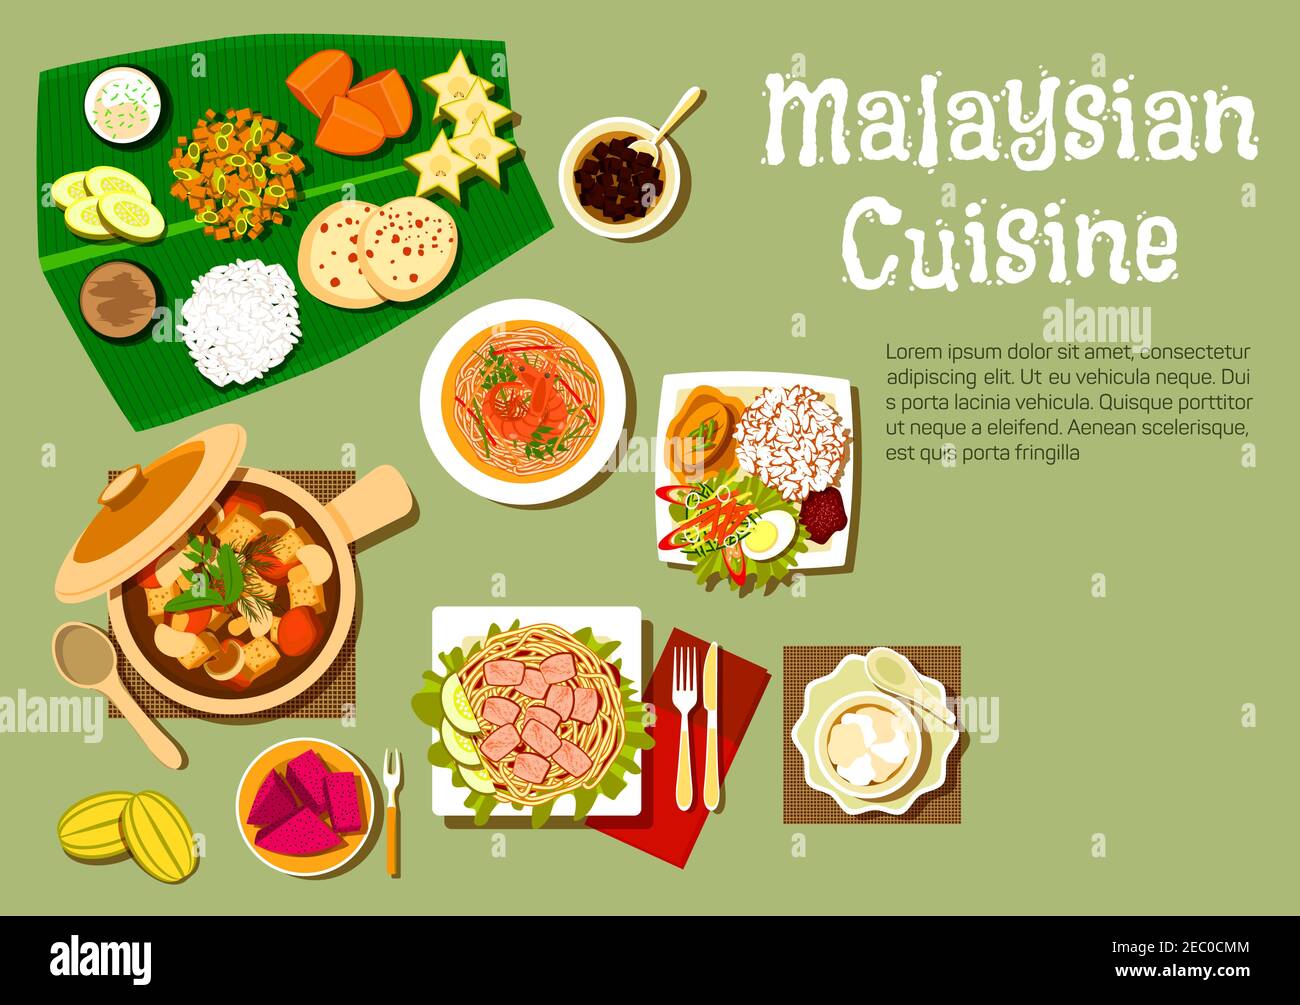 Cucina malese con riso nasi limak e noodle di gamberi, noodle tofu con curry, stufato di maiale con funghi e tofu, frutto della passione e carambola, mango Illustrazione Vettoriale